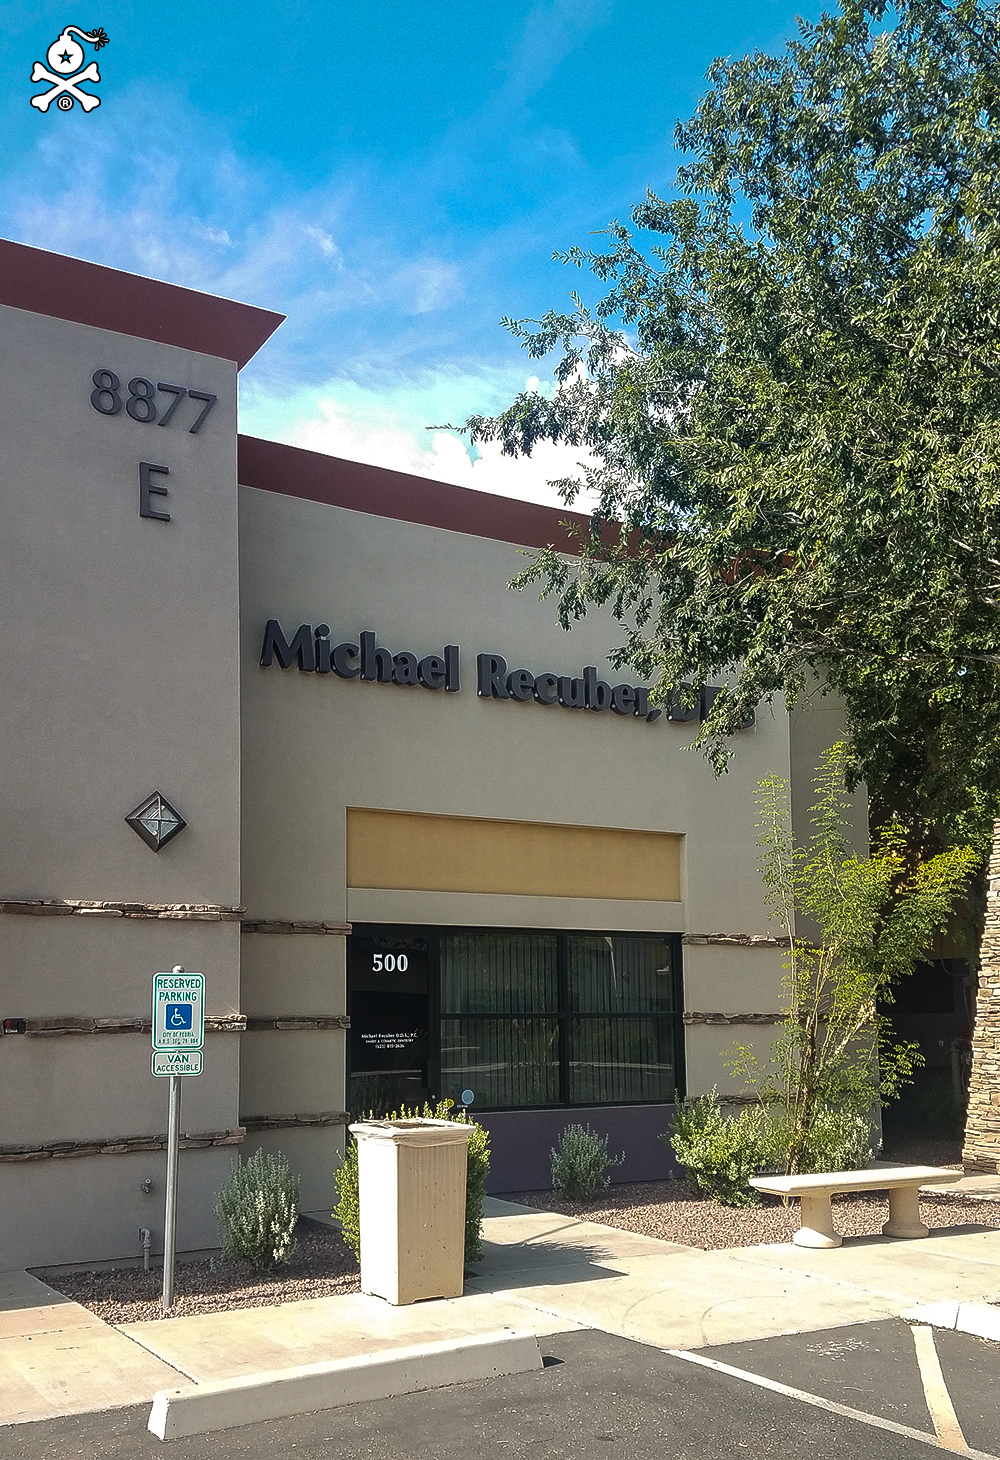 Michael Recuber DDS PC | 8877 W Union Hills Dr suite e-500, Peoria, AZ 85382 | Phone: (623) 815-2626